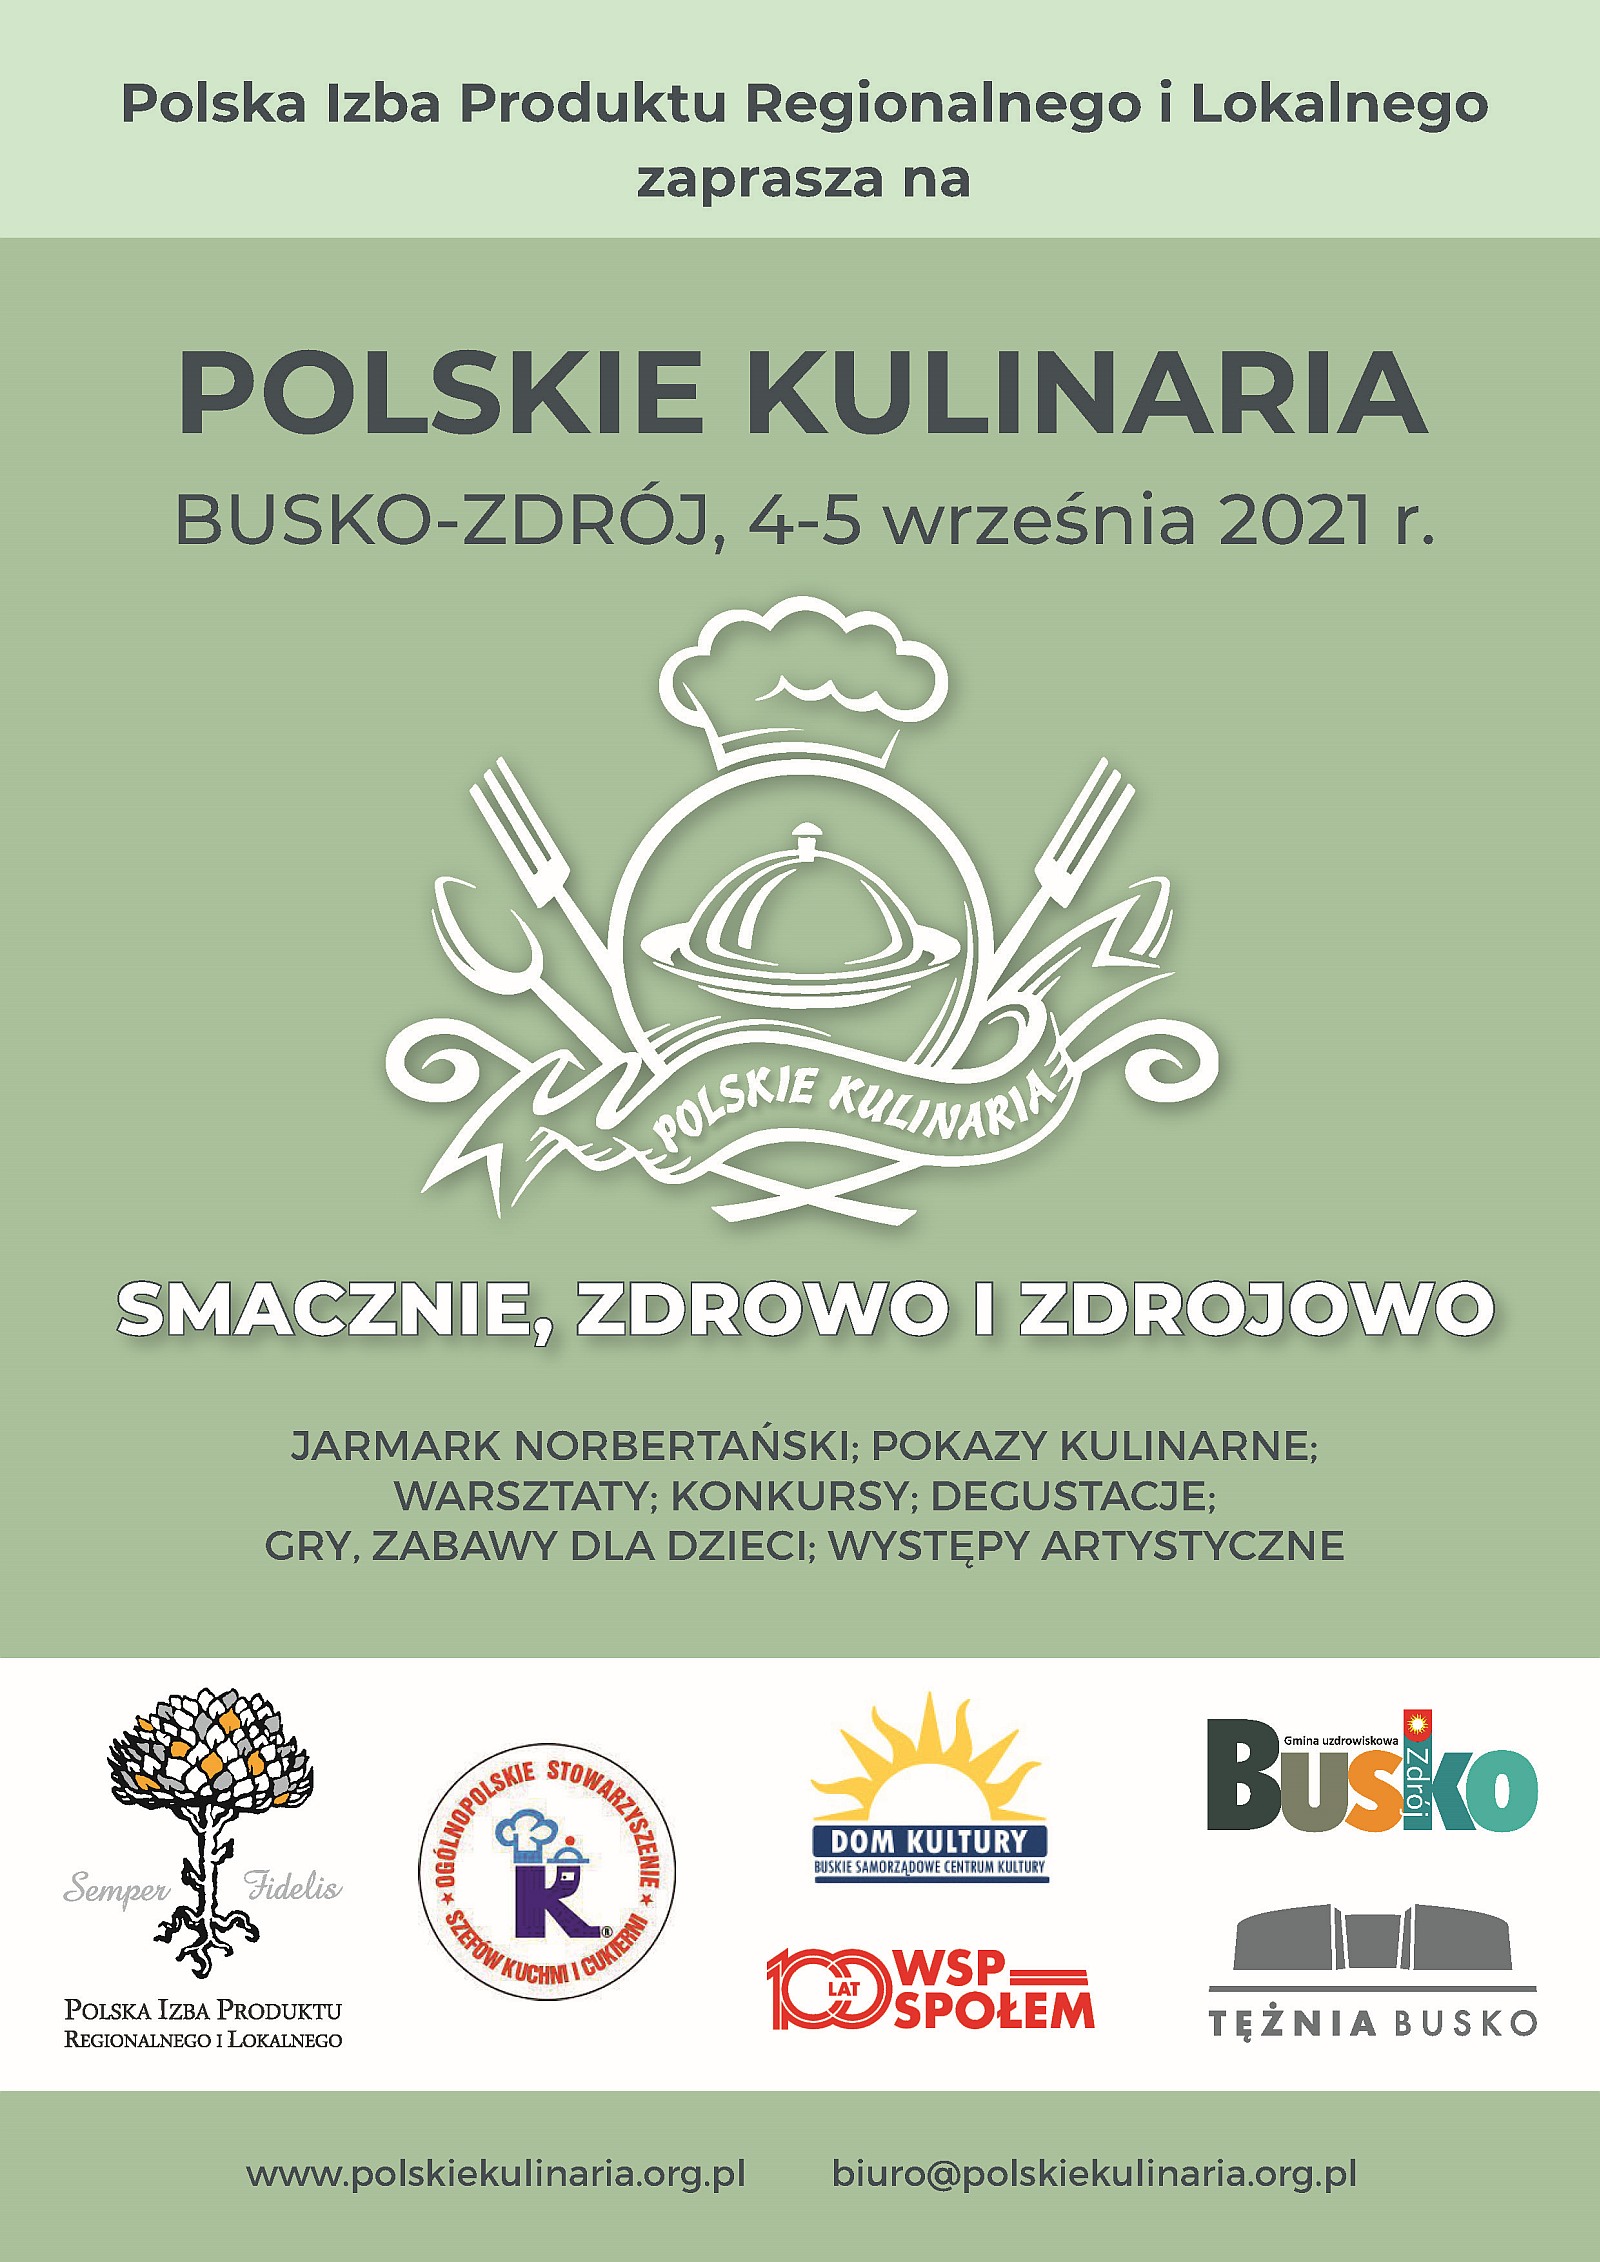 Polskie kulinaria Busko-Zdrój, 2-4 września 2021 - Smacznie, zdrowo i zdrojowo